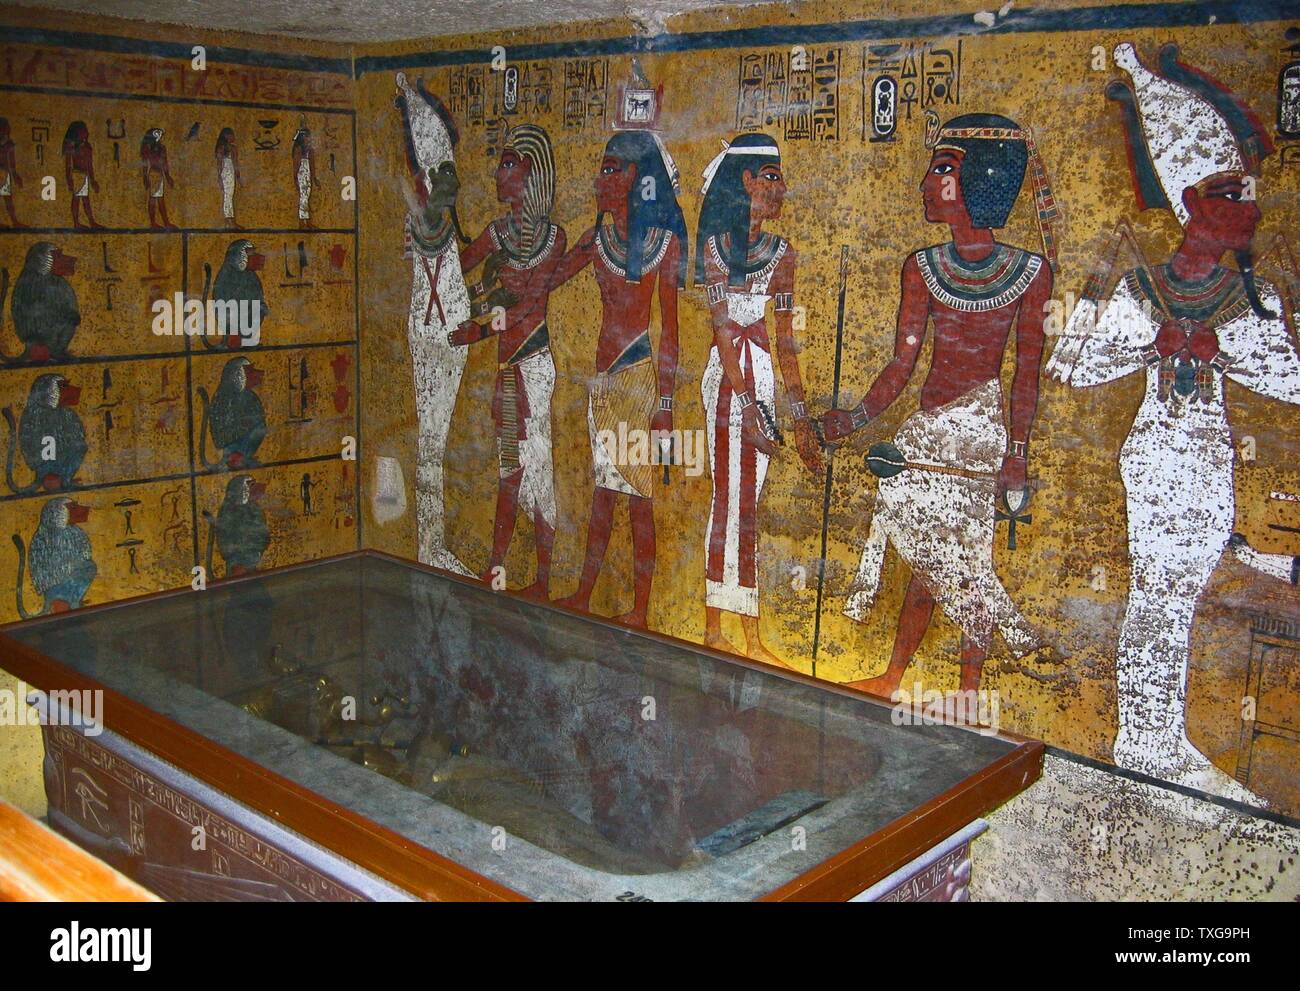 Tutankhamon, (1345 BC - 1327 BC) faraone egiziano del XVIII dinastia, durante il periodo della storia egiziana conosciuta come 'Nuovo Regno'. Il 1922 scoperta da Howard Carter di Tutankhamon la tomba intatta Foto Stock